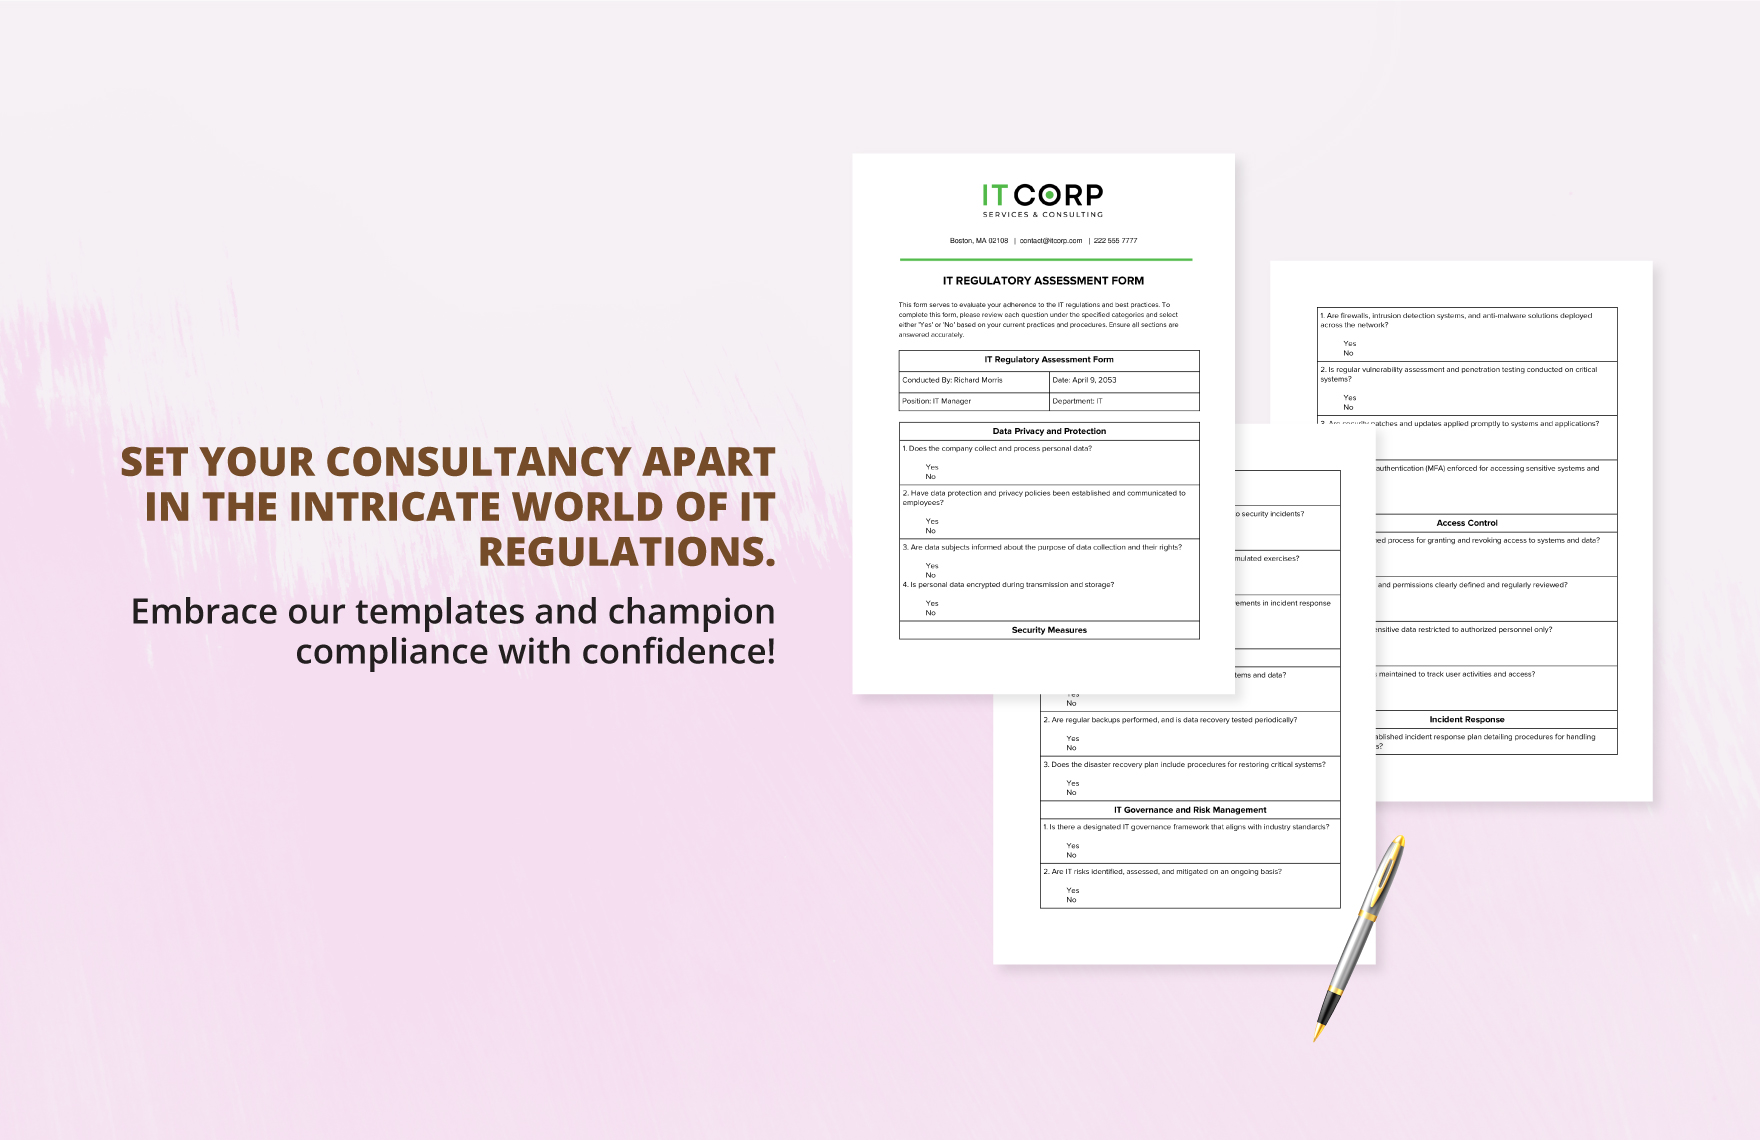 IT Regulatory Assessment Form Template